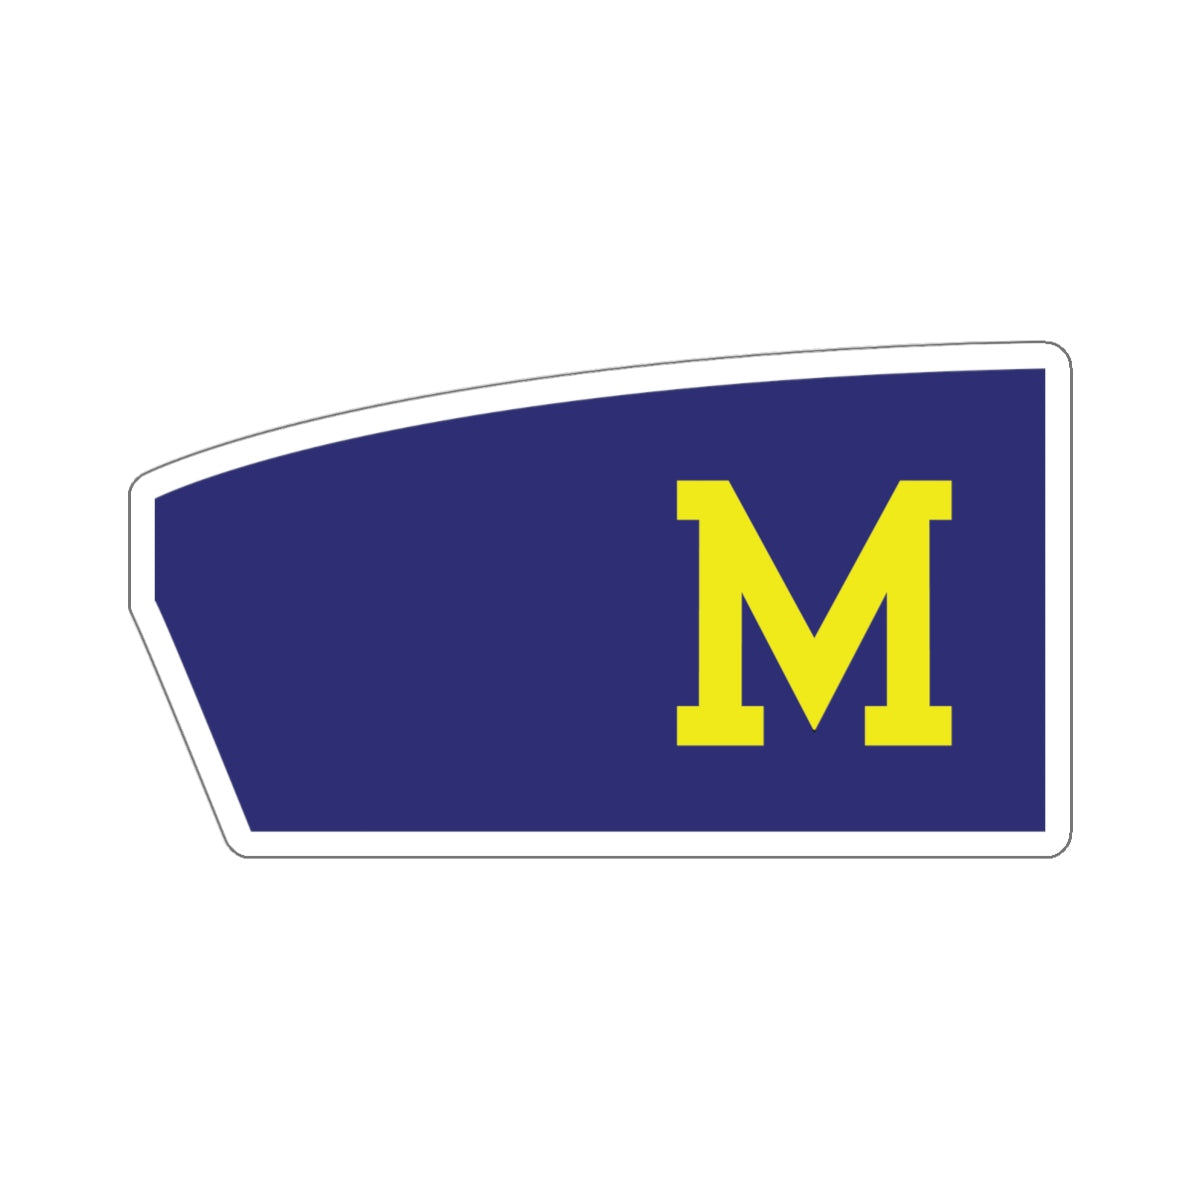 Upper Merion High School (Starboard) Sticker